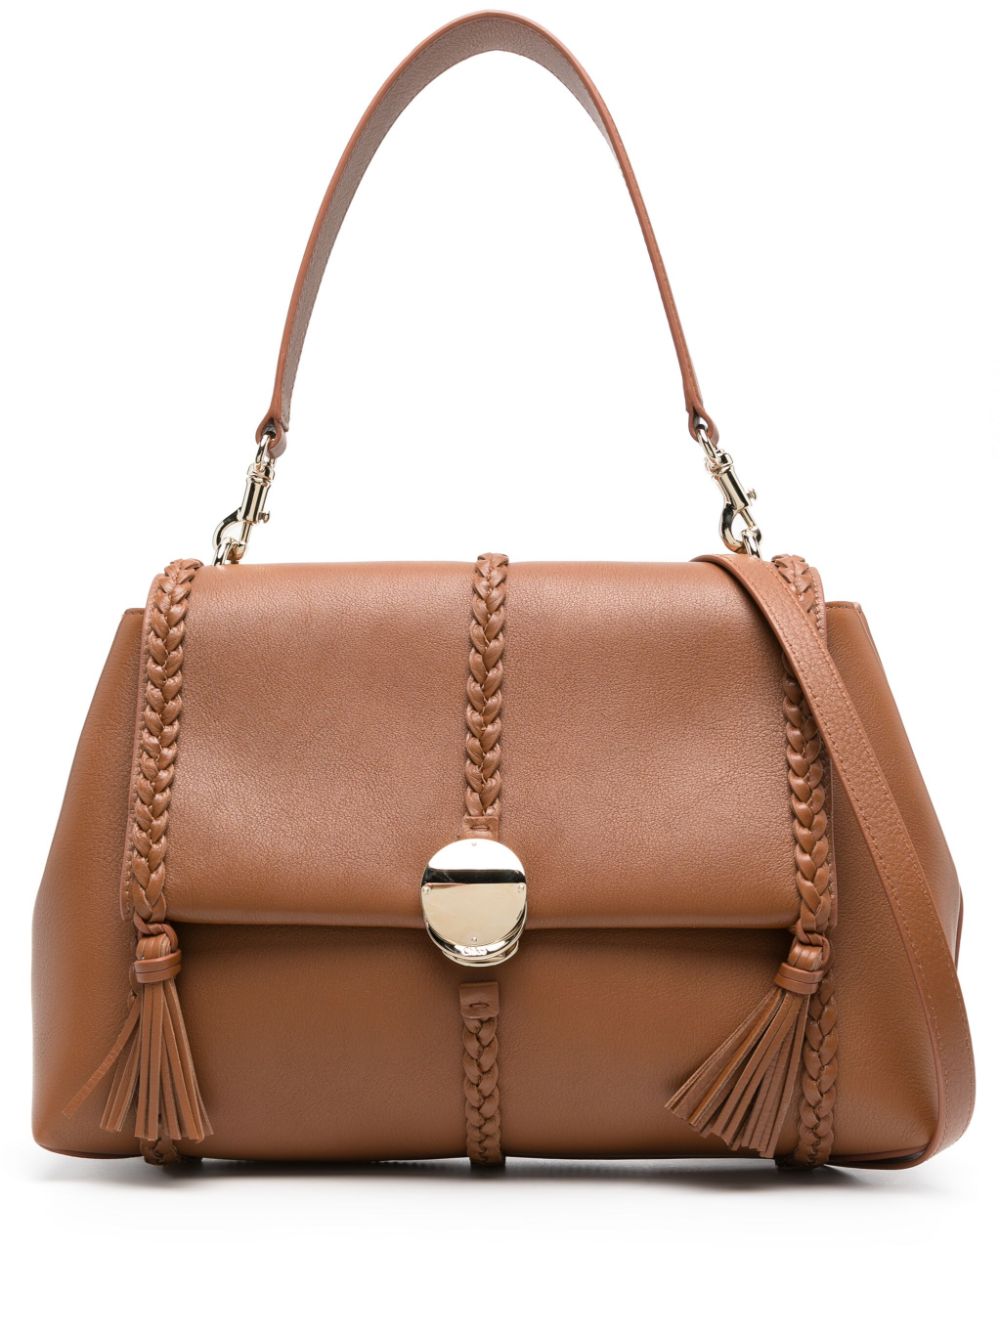 CHLOÉ: Penelope bag in grained leather - Black  Chloé shoulder bag  C23US569K15 online at